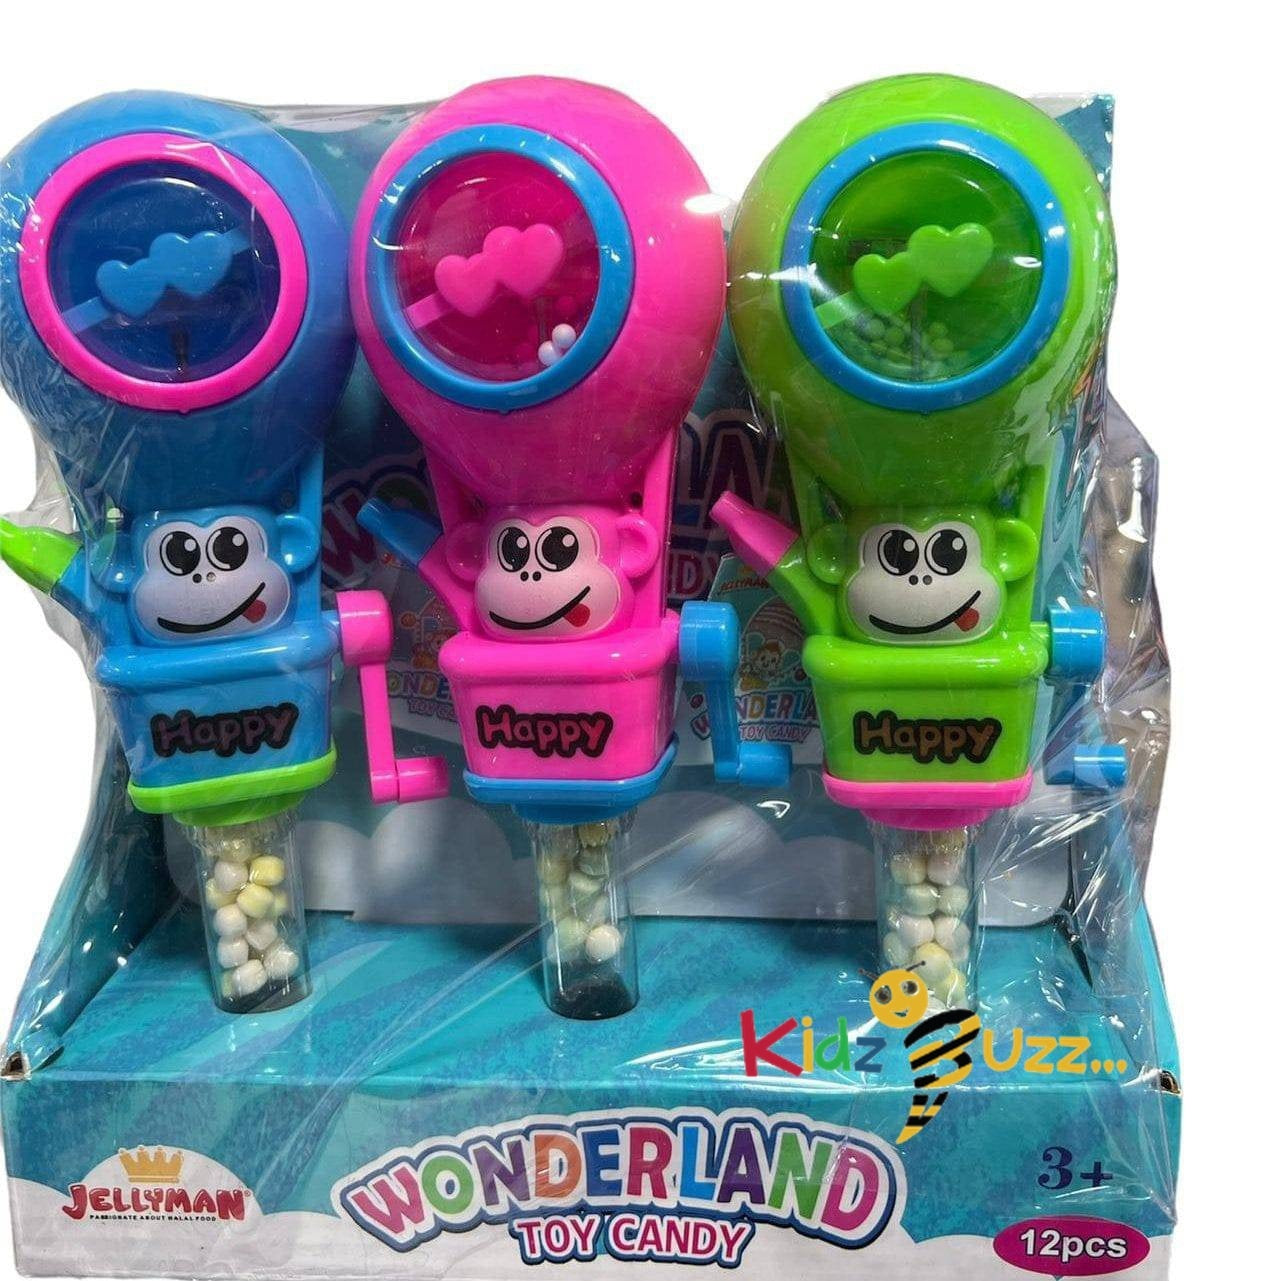 Wonderland Toy Candy